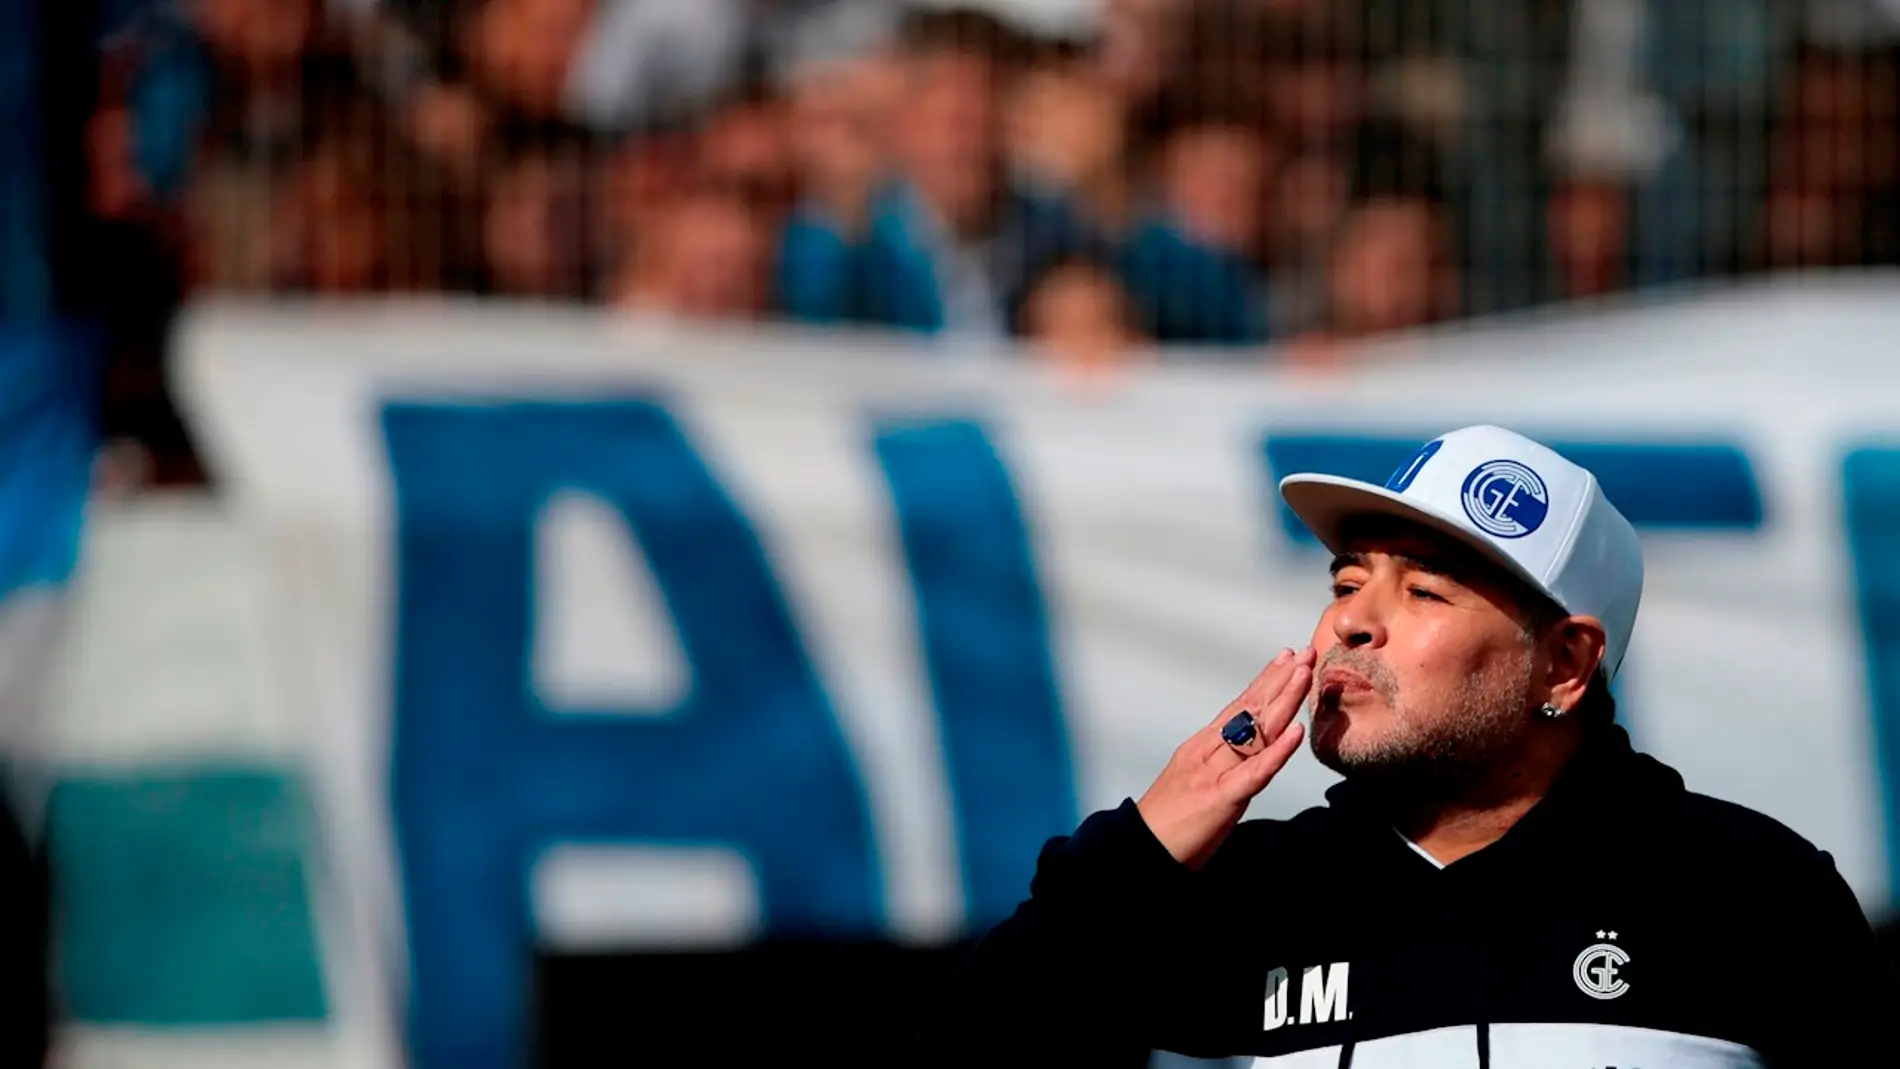 Maradona ha muerto: reacciones al fallecimiento del futbolista argentino, en directo